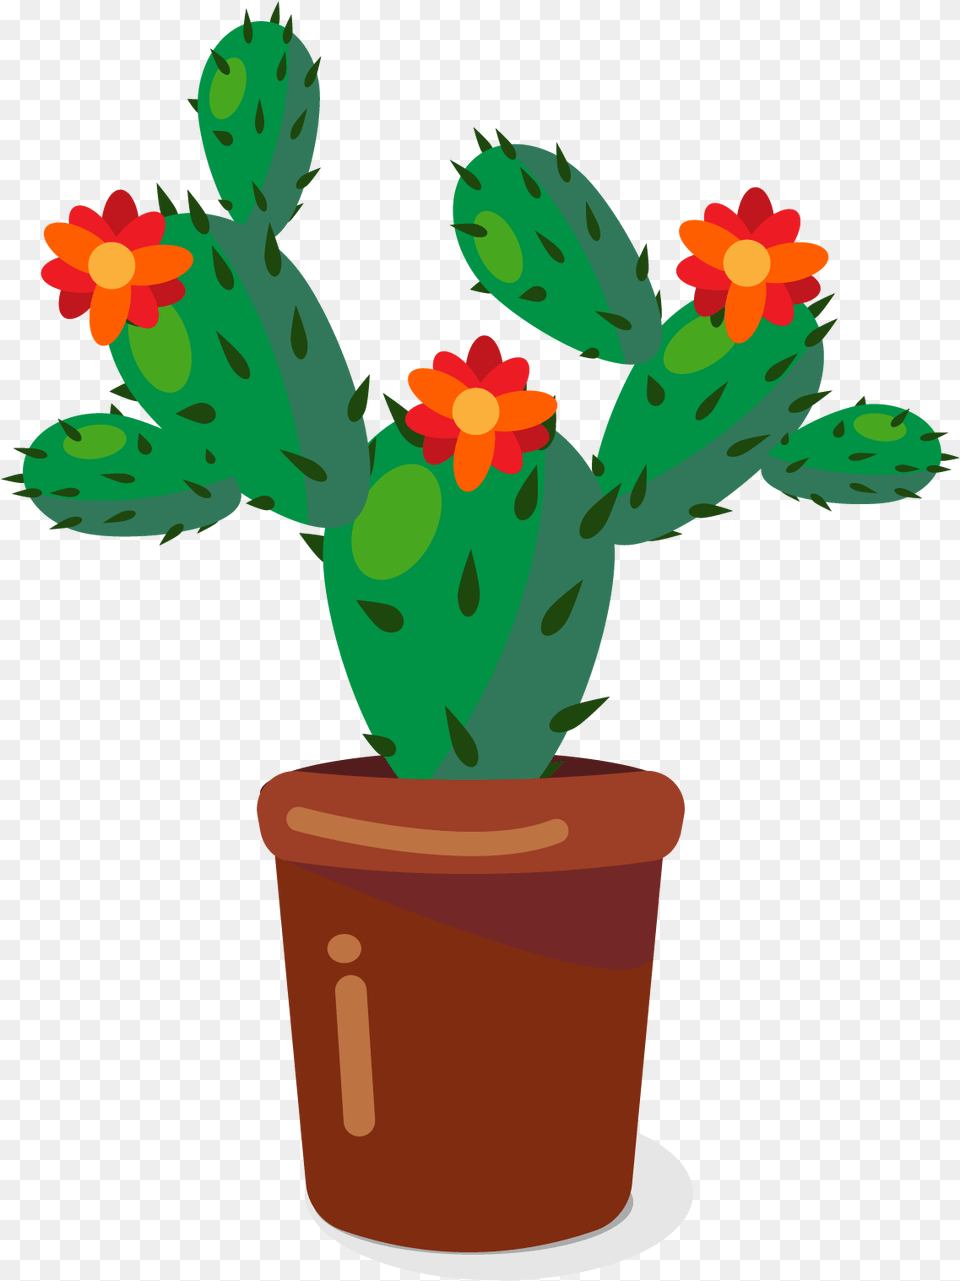 Download Cactaceae Plant Flowerpot Flower Pot Cartoon Cactus Clipart, Potted Plant Free Png